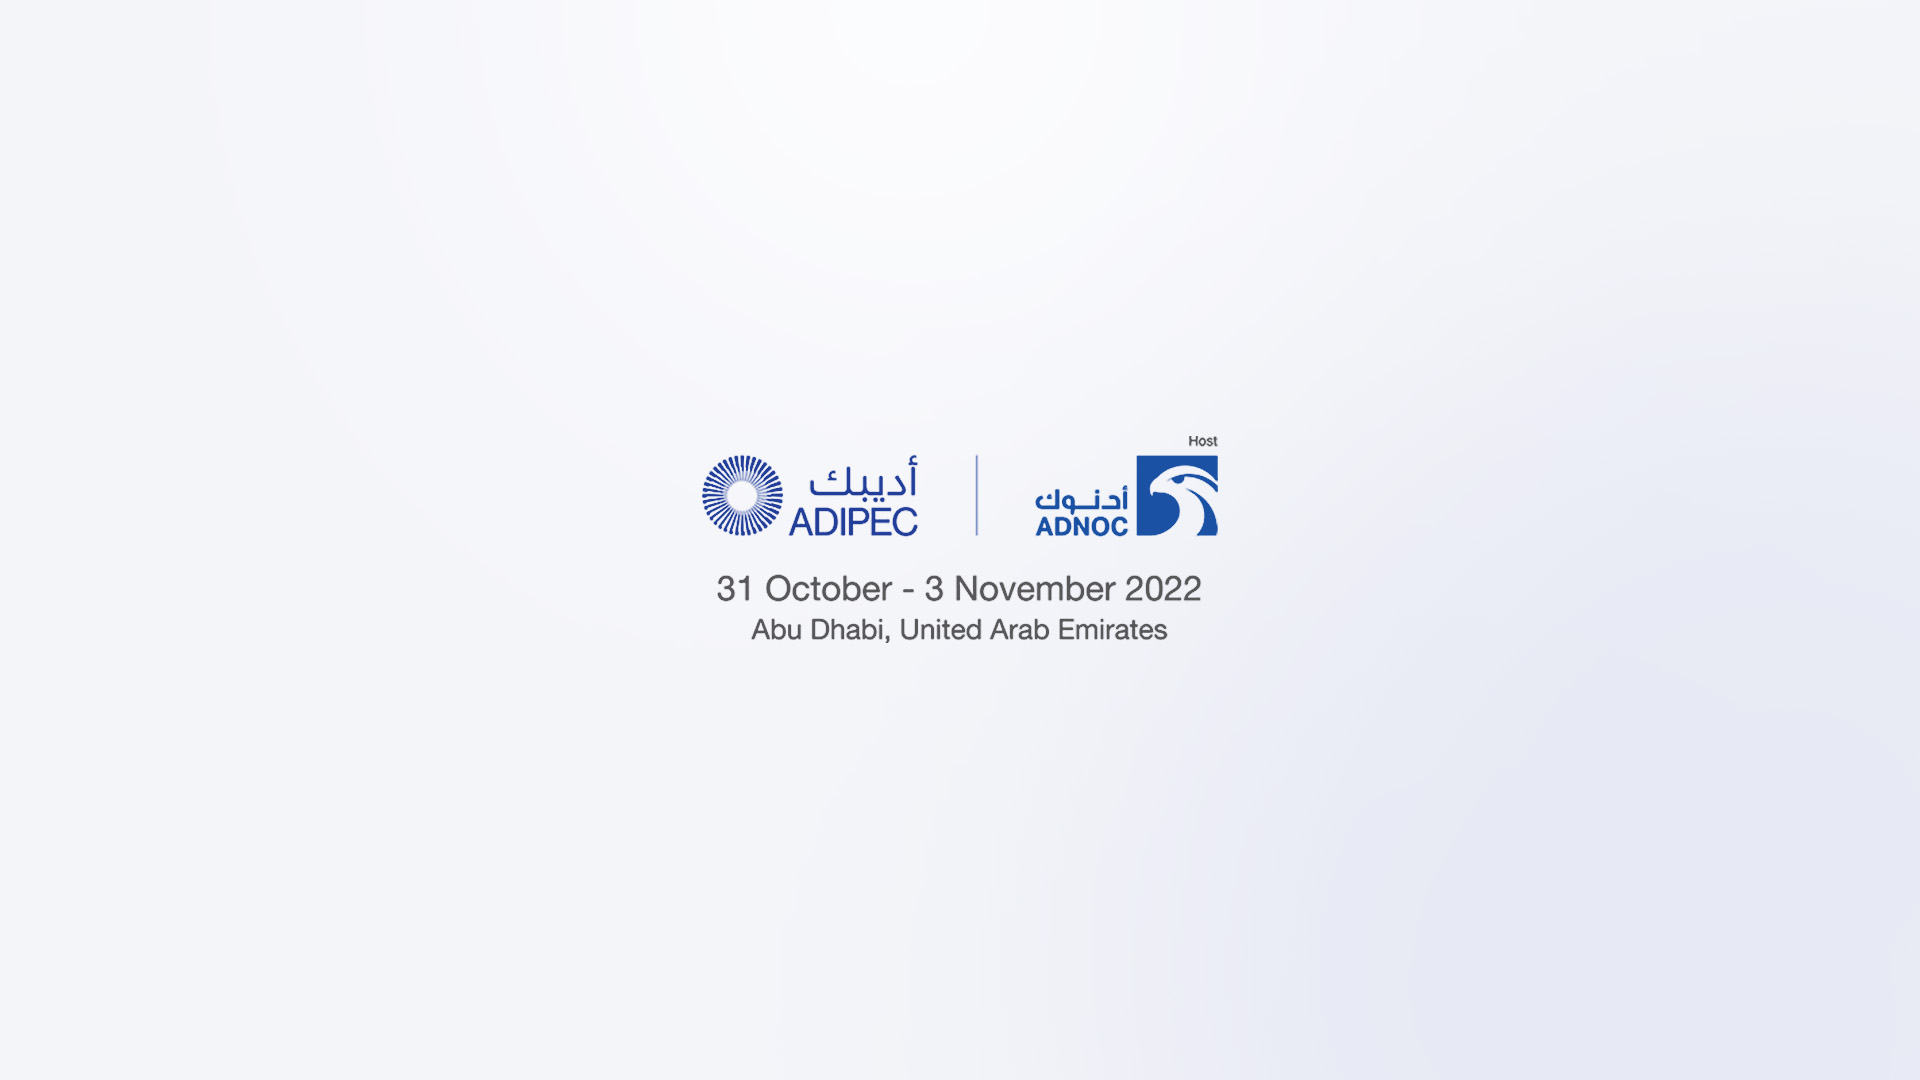 Roboze è all’ADIPEC 2022 di Abu Dhabi con Immensa